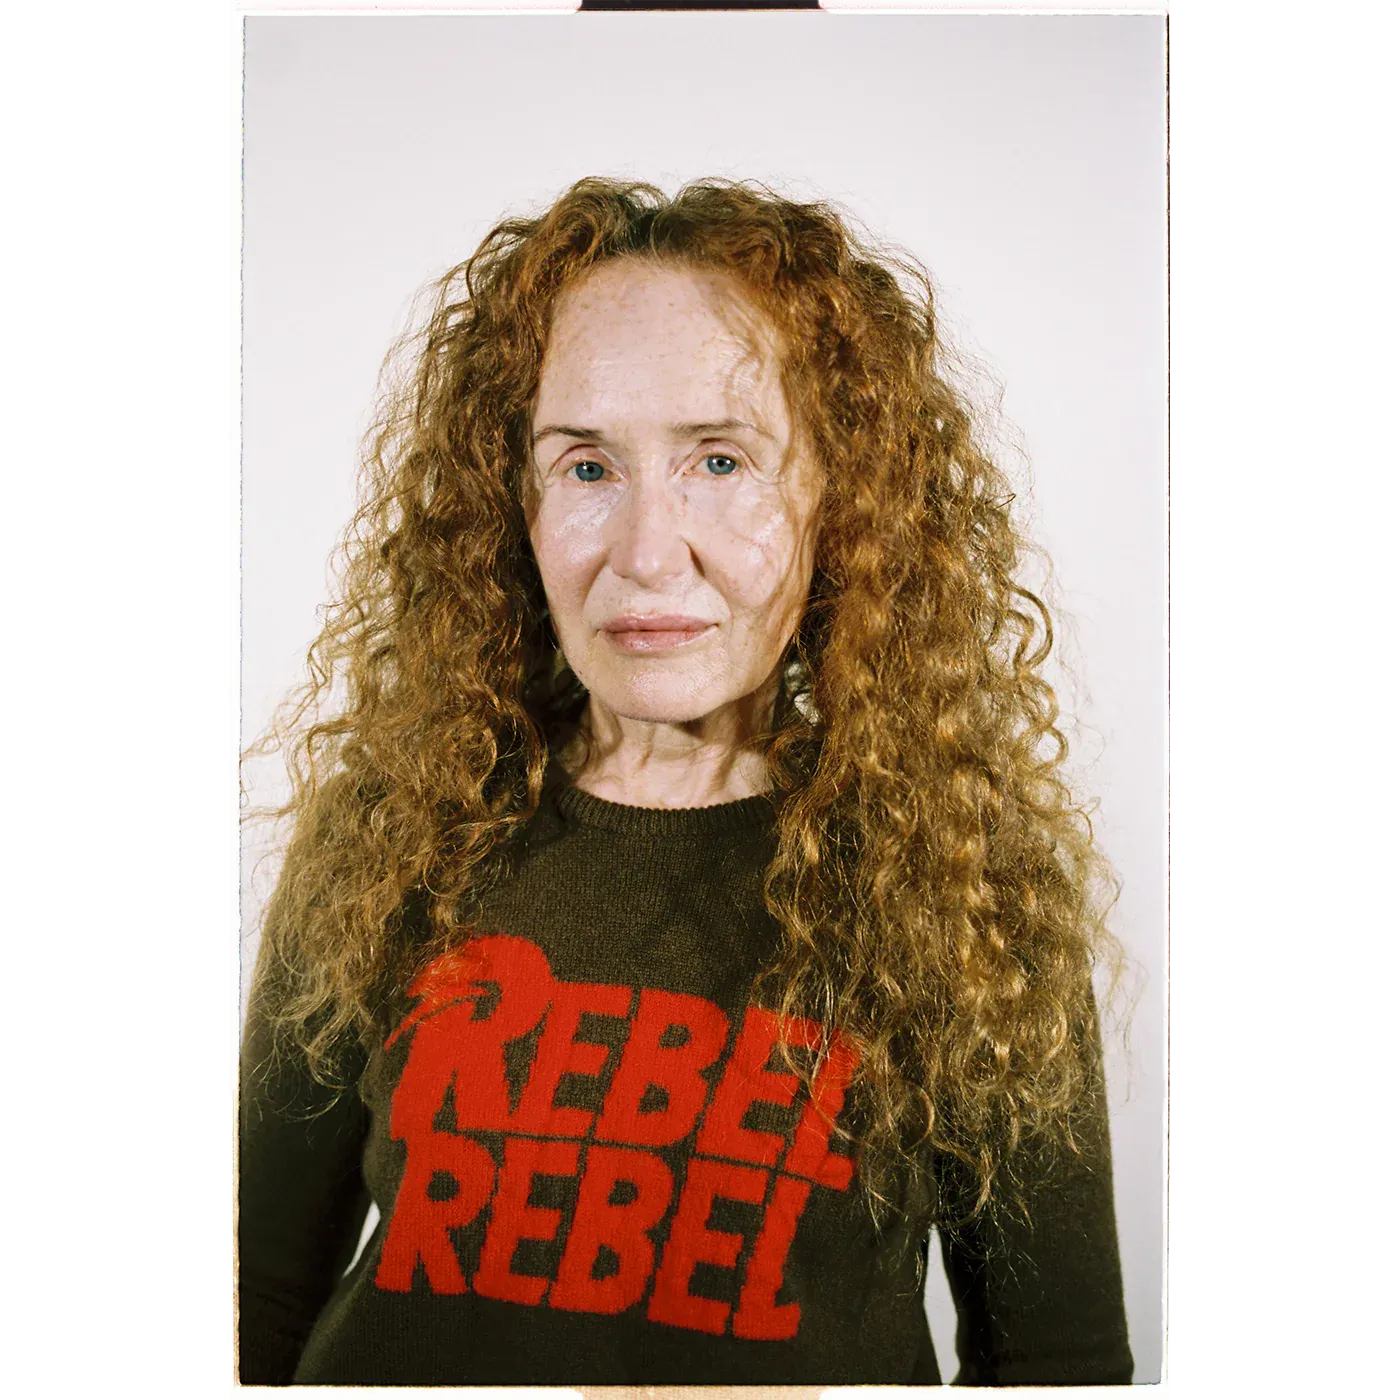 Album artwork for David Bowie- Women's Rebel Rebel Sweater by Hades Knitwear